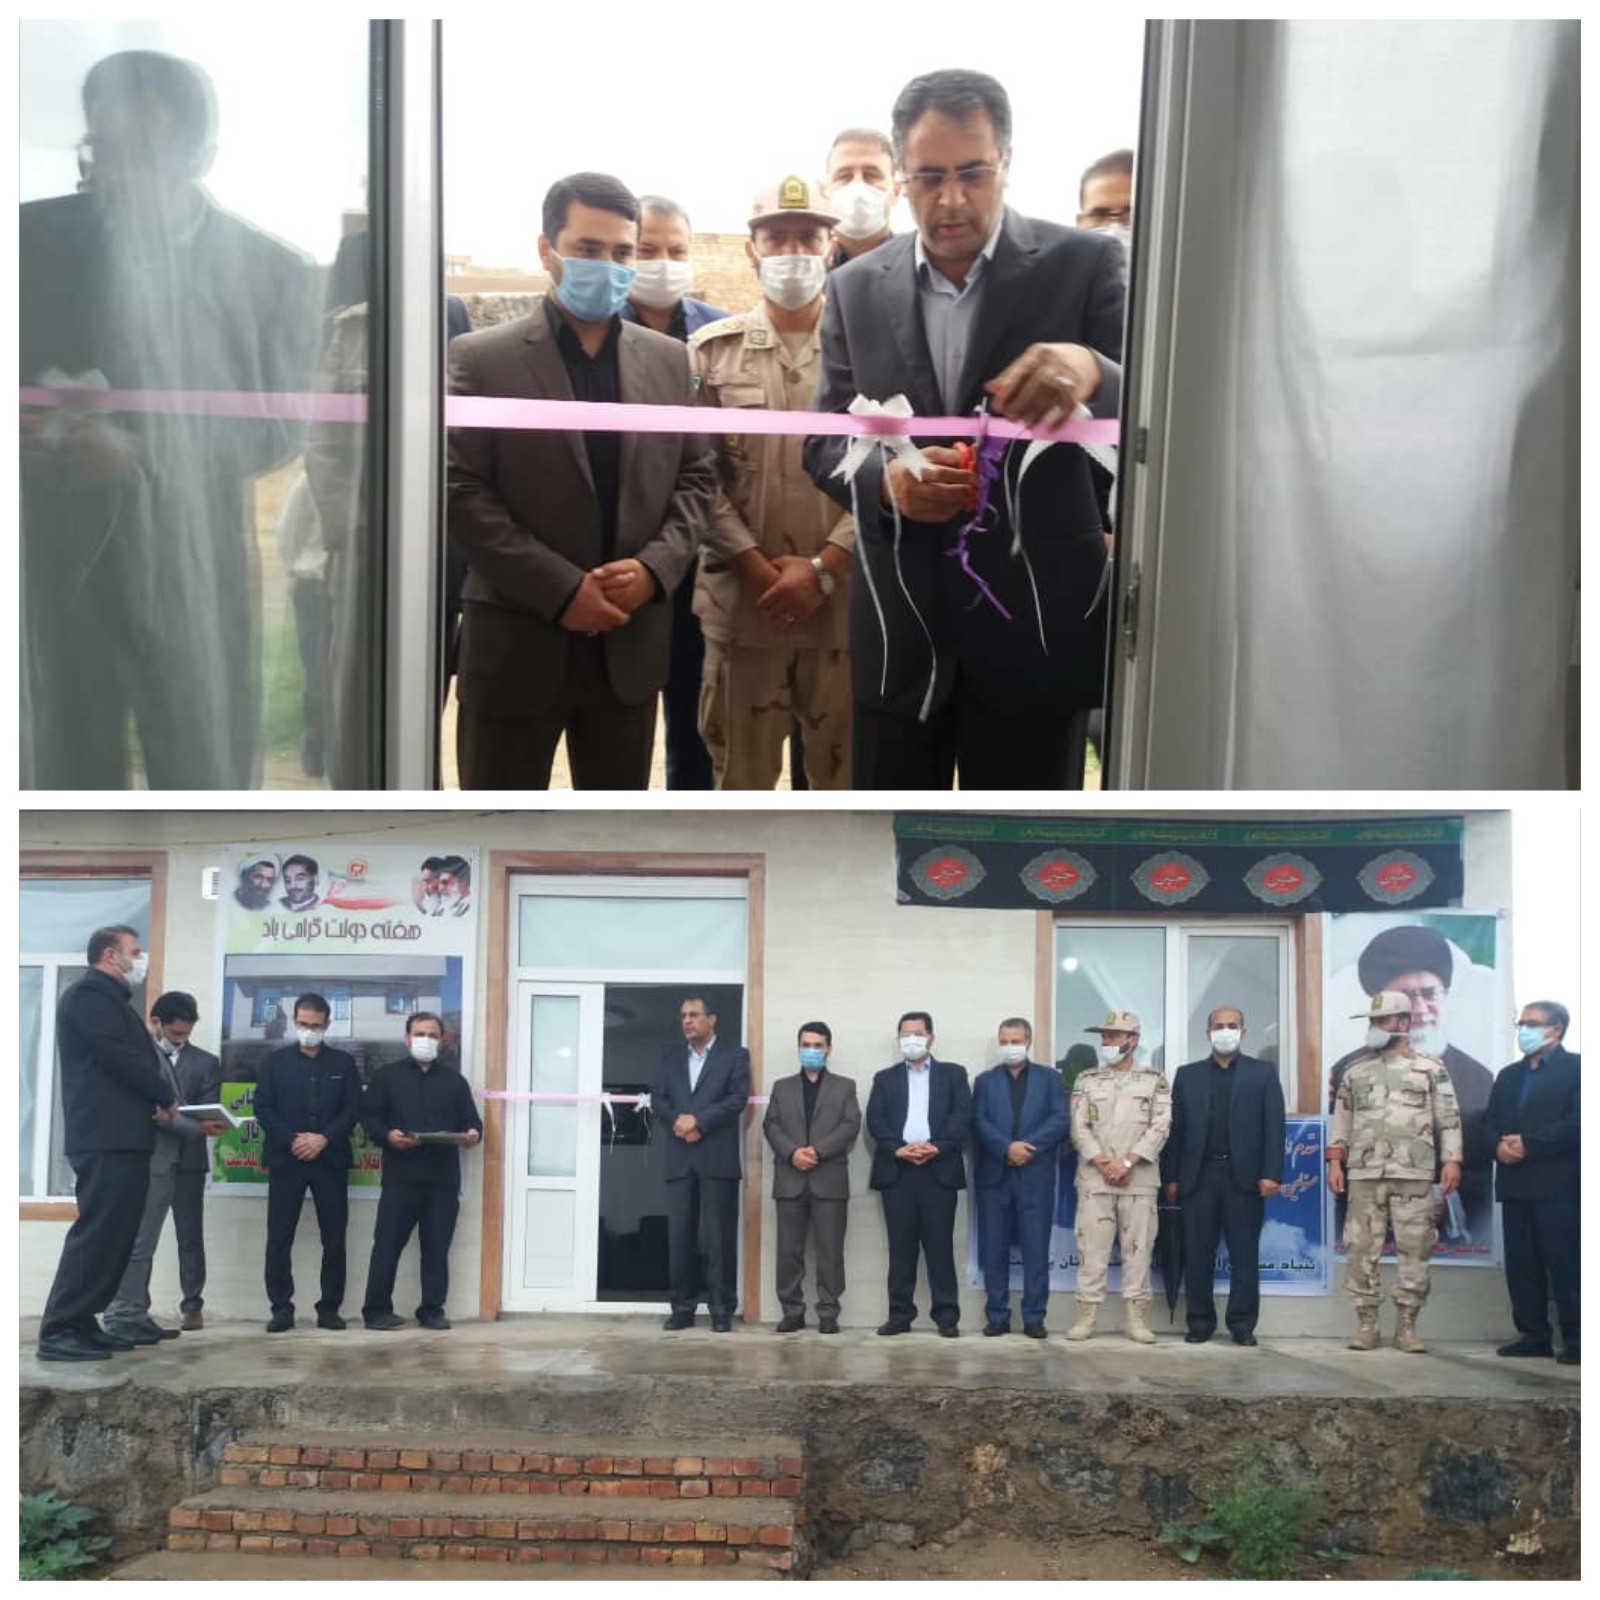 افتتاح همزمان ۳۵ واحد مسکن روستایی در شهرستان پلدشت